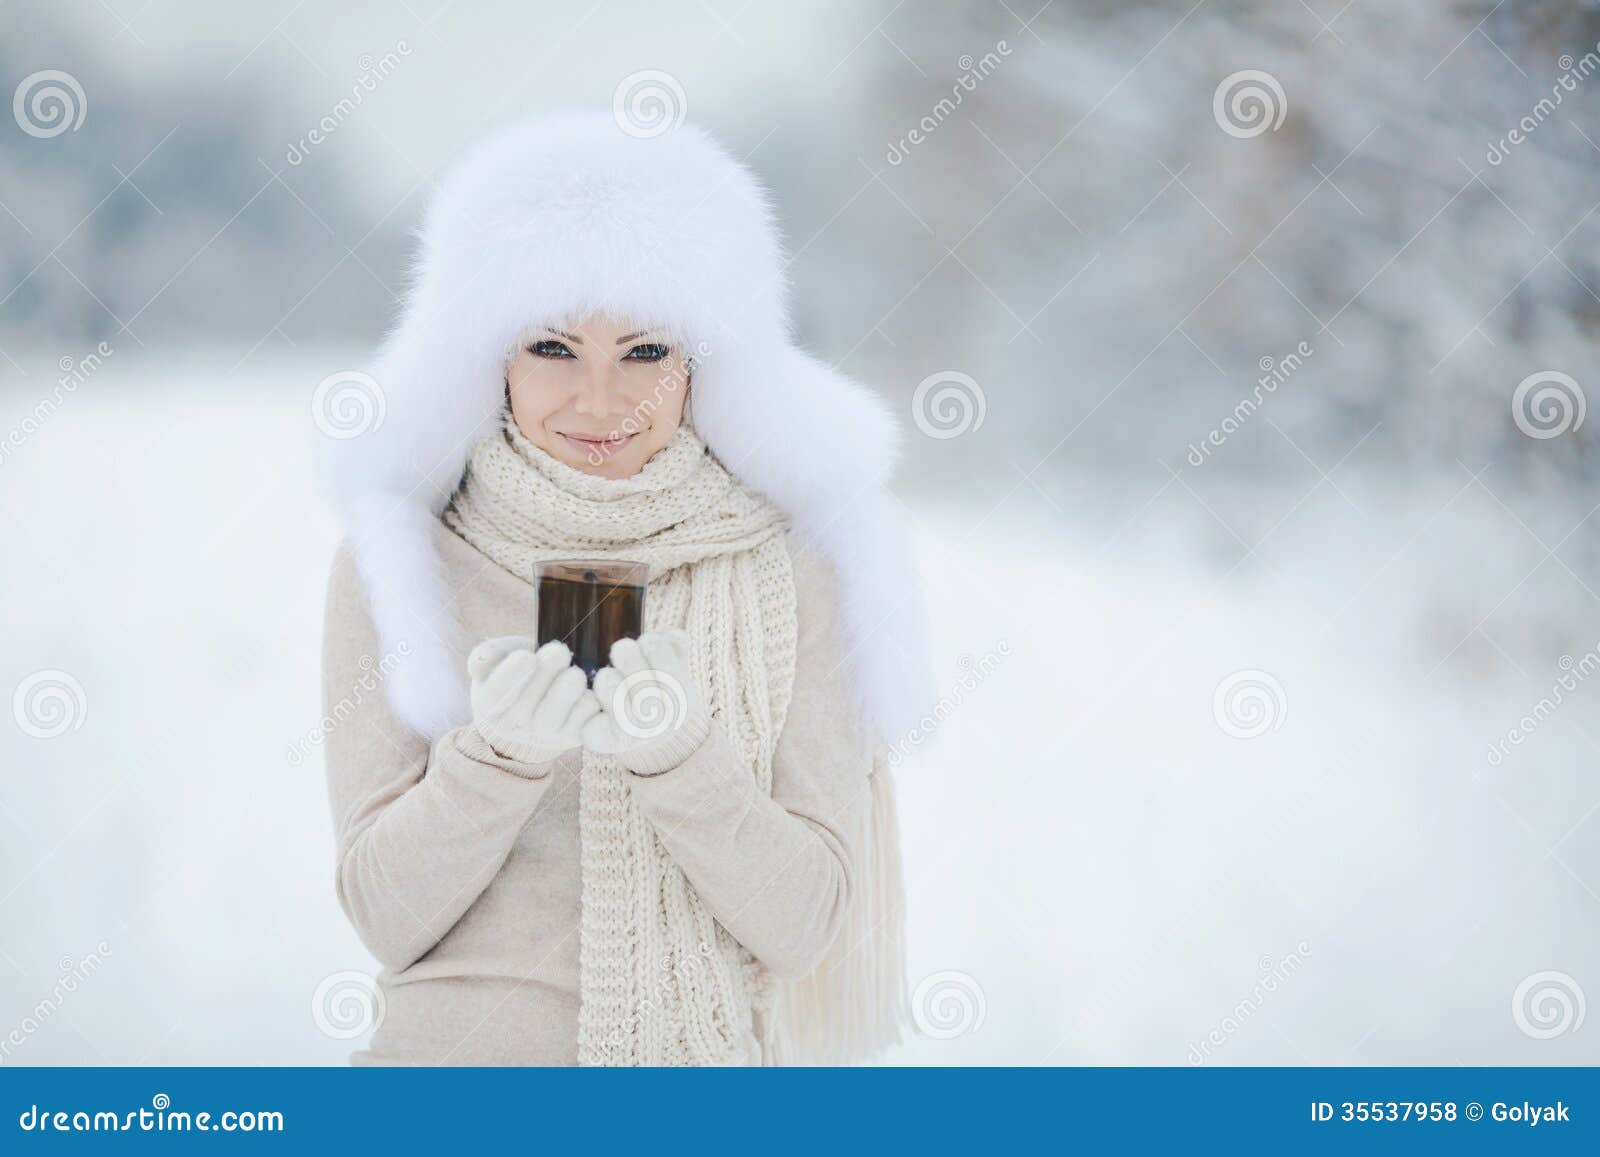 Фото Природа Девушка Зима